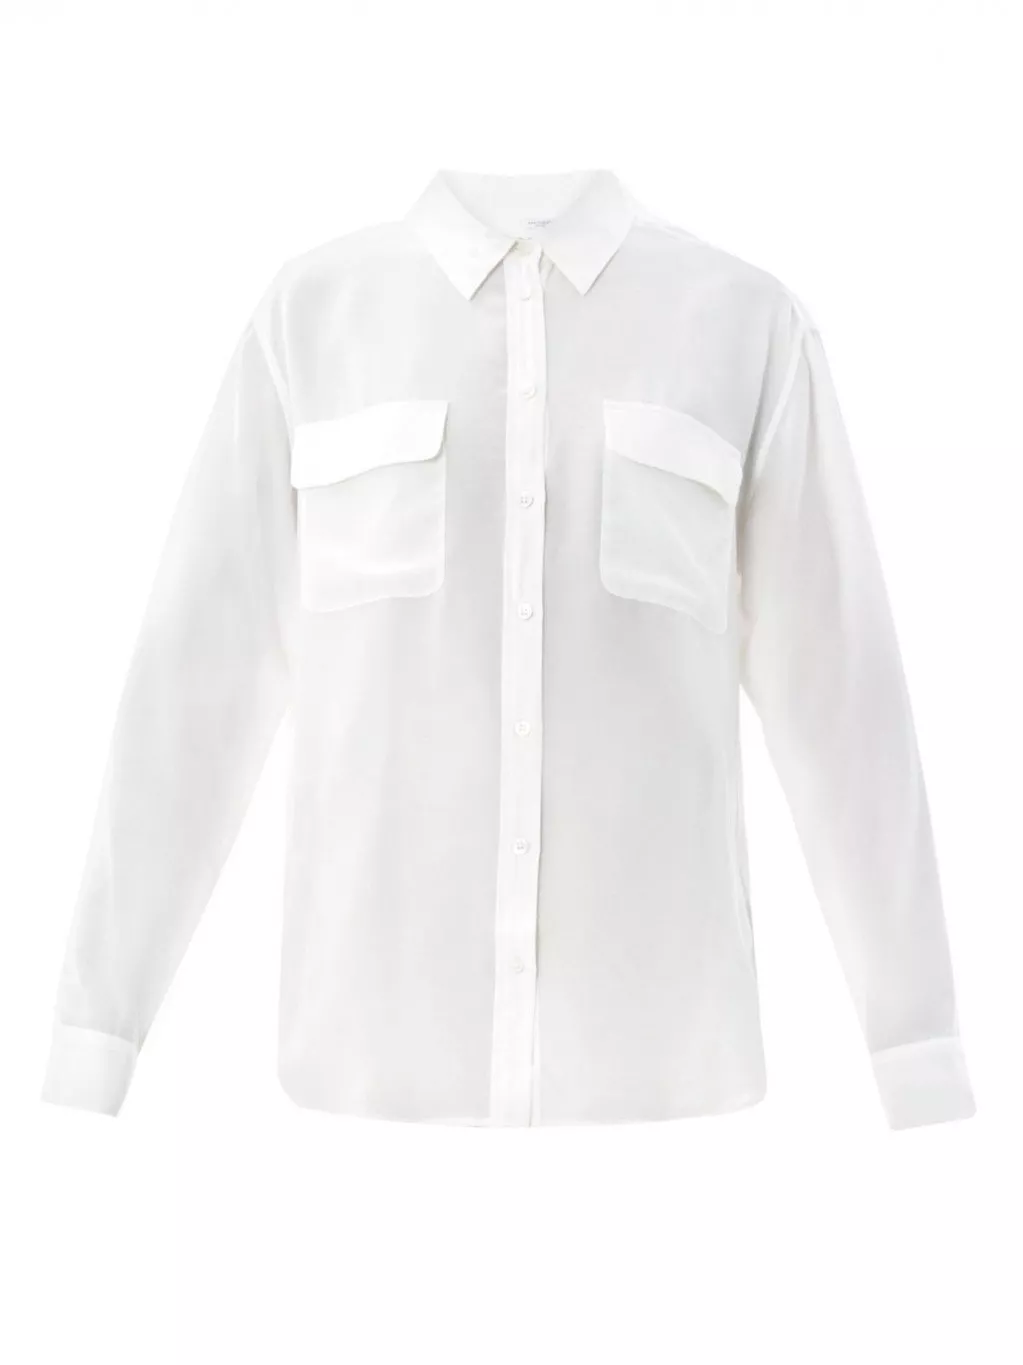 القميص الأبيض الكلاسيكيّ لا غنى لكِ عنه في خريف 2016